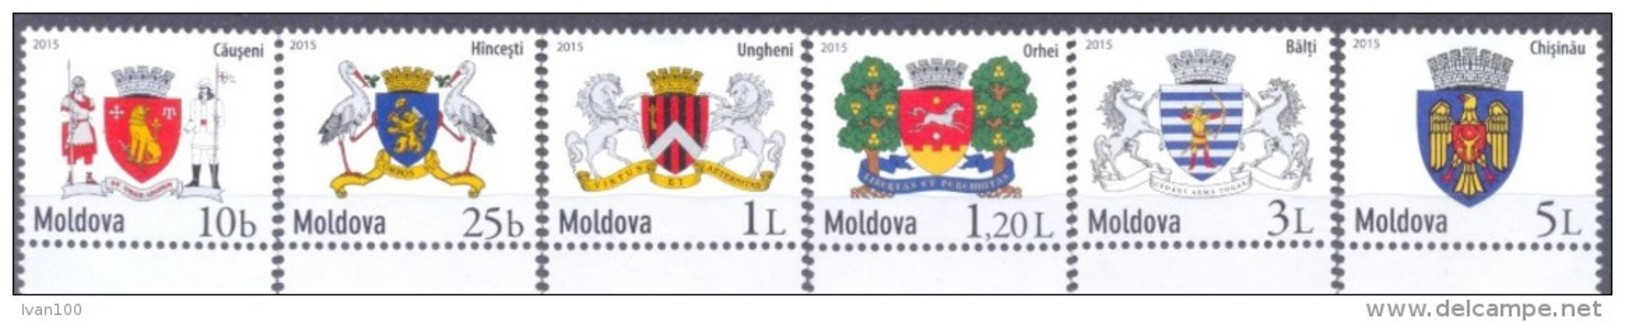 2015. Moldova, Definitives, COA Of Towns, 6v, Mint/** - Moldavia